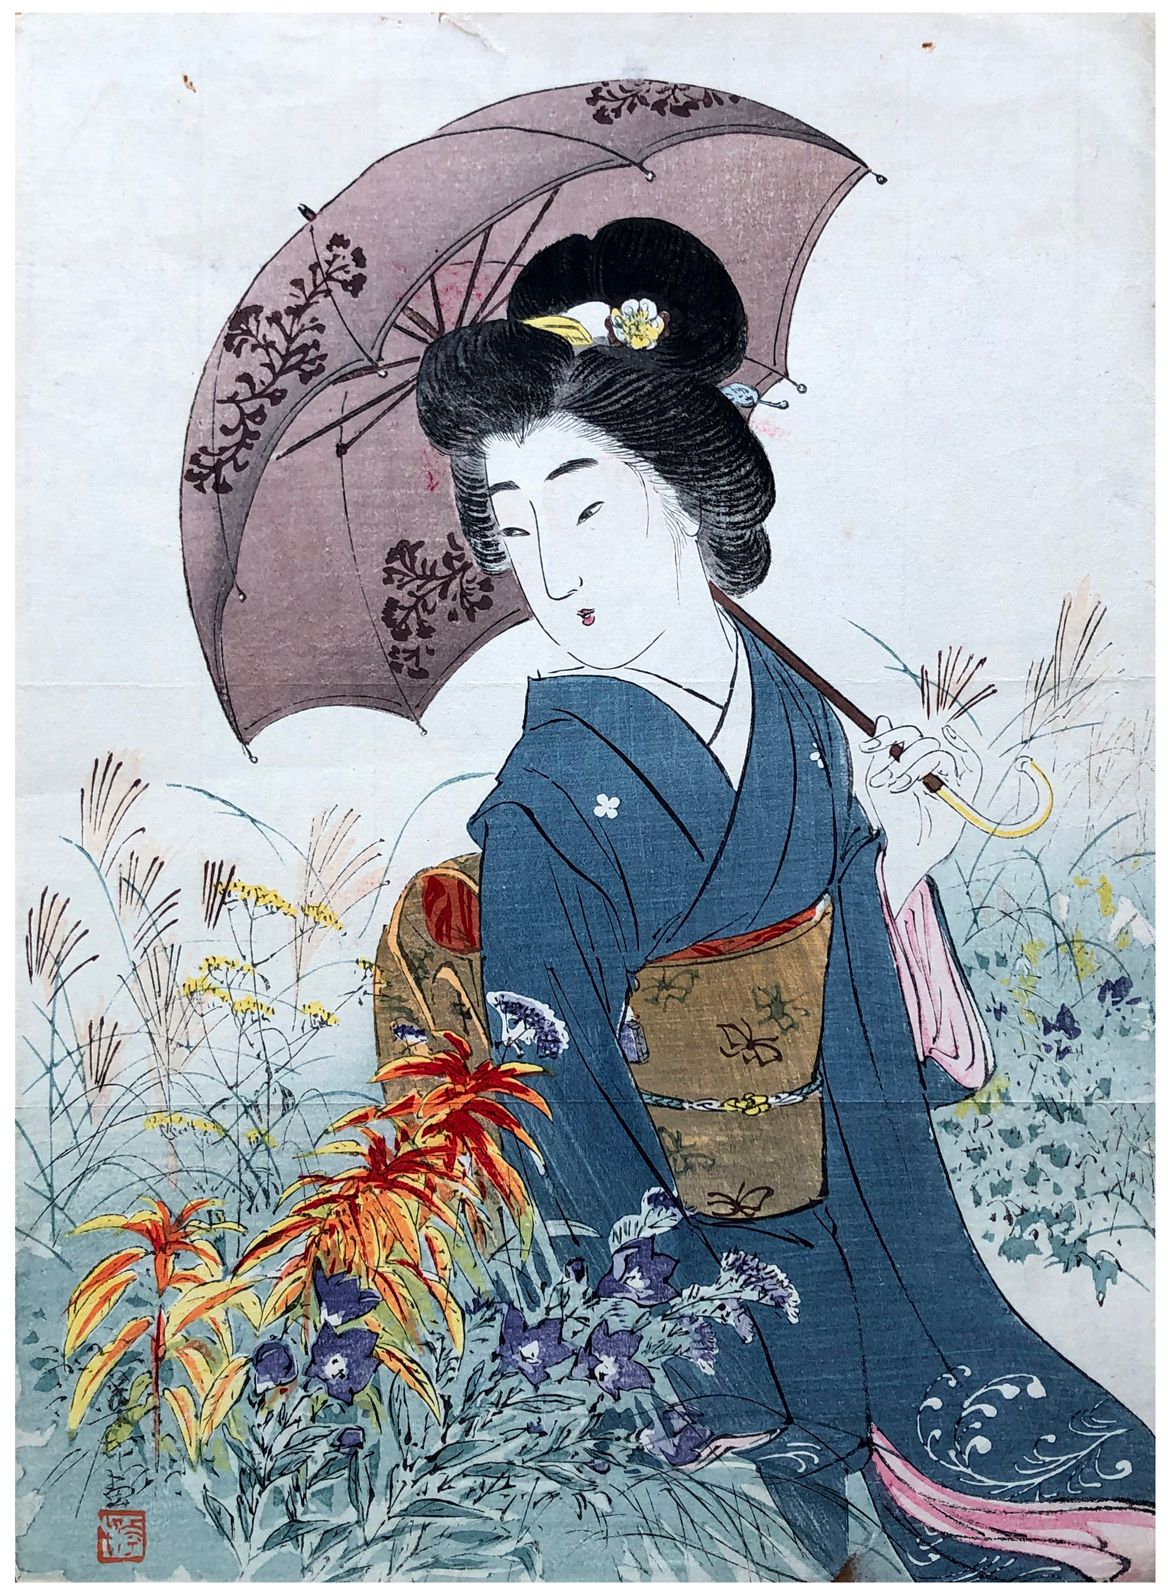 Japanese Woodblock Print by Suzuki Kason Bijin in Autumn Garden 
Pequeña pérdida&hellip;